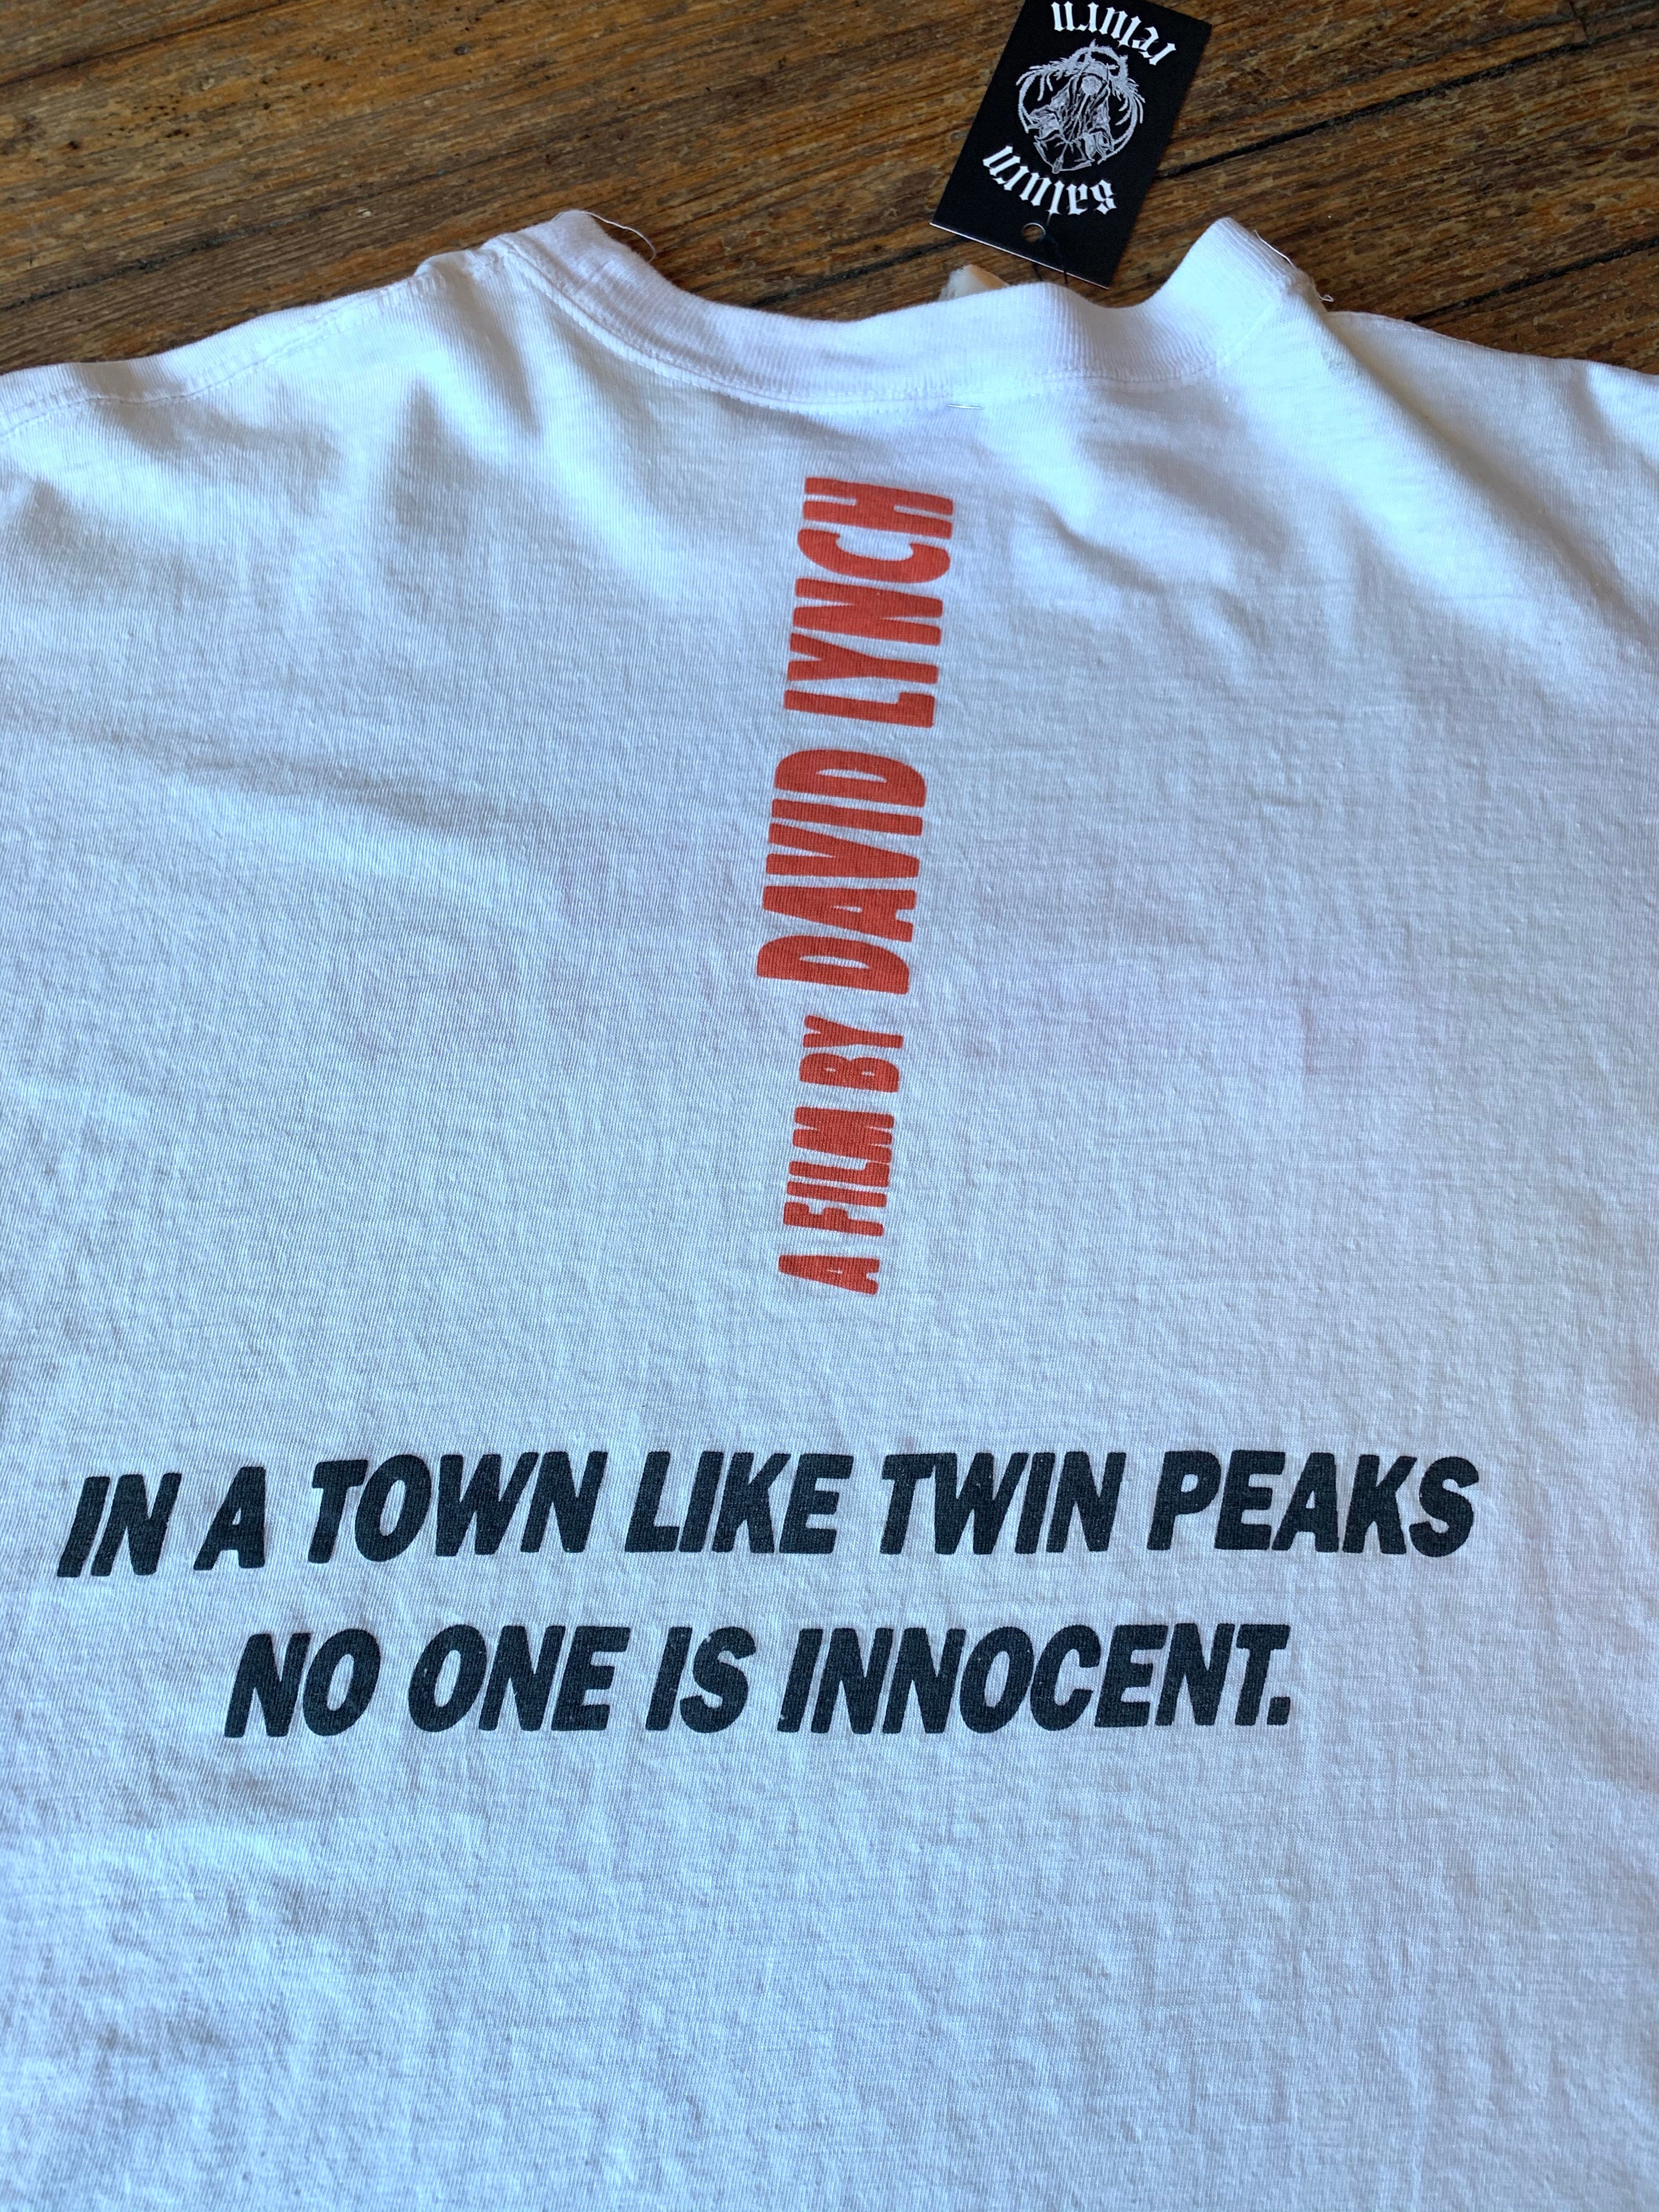 vintage twin peaks shirt